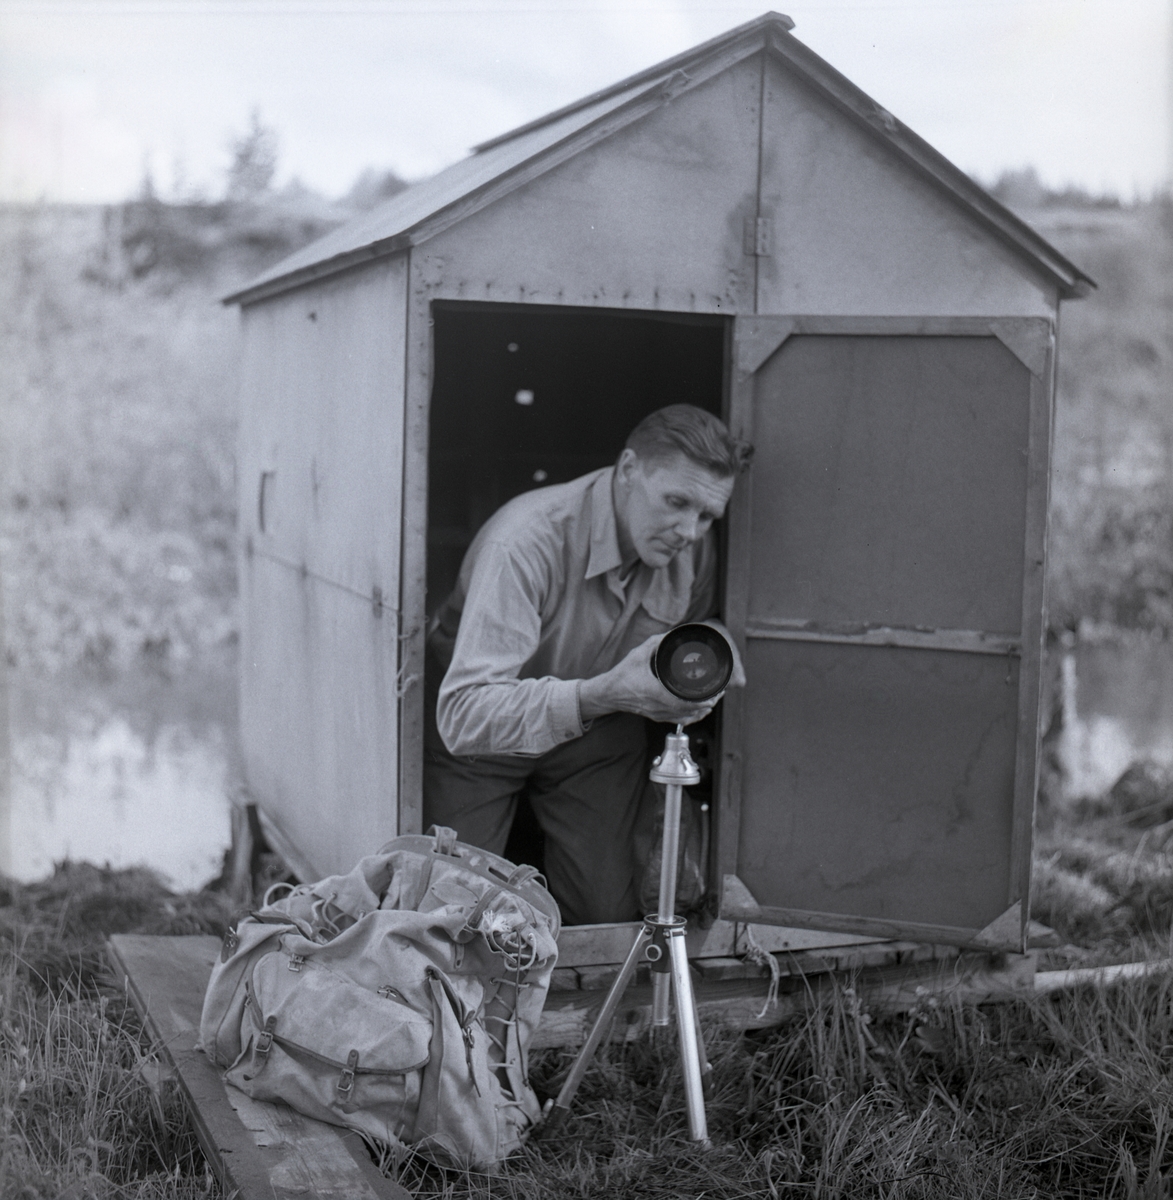 Hilding sitter vid dörren till en orrkoja och placerar sin kamera med teleobjektiv på ett stativ, 1963.